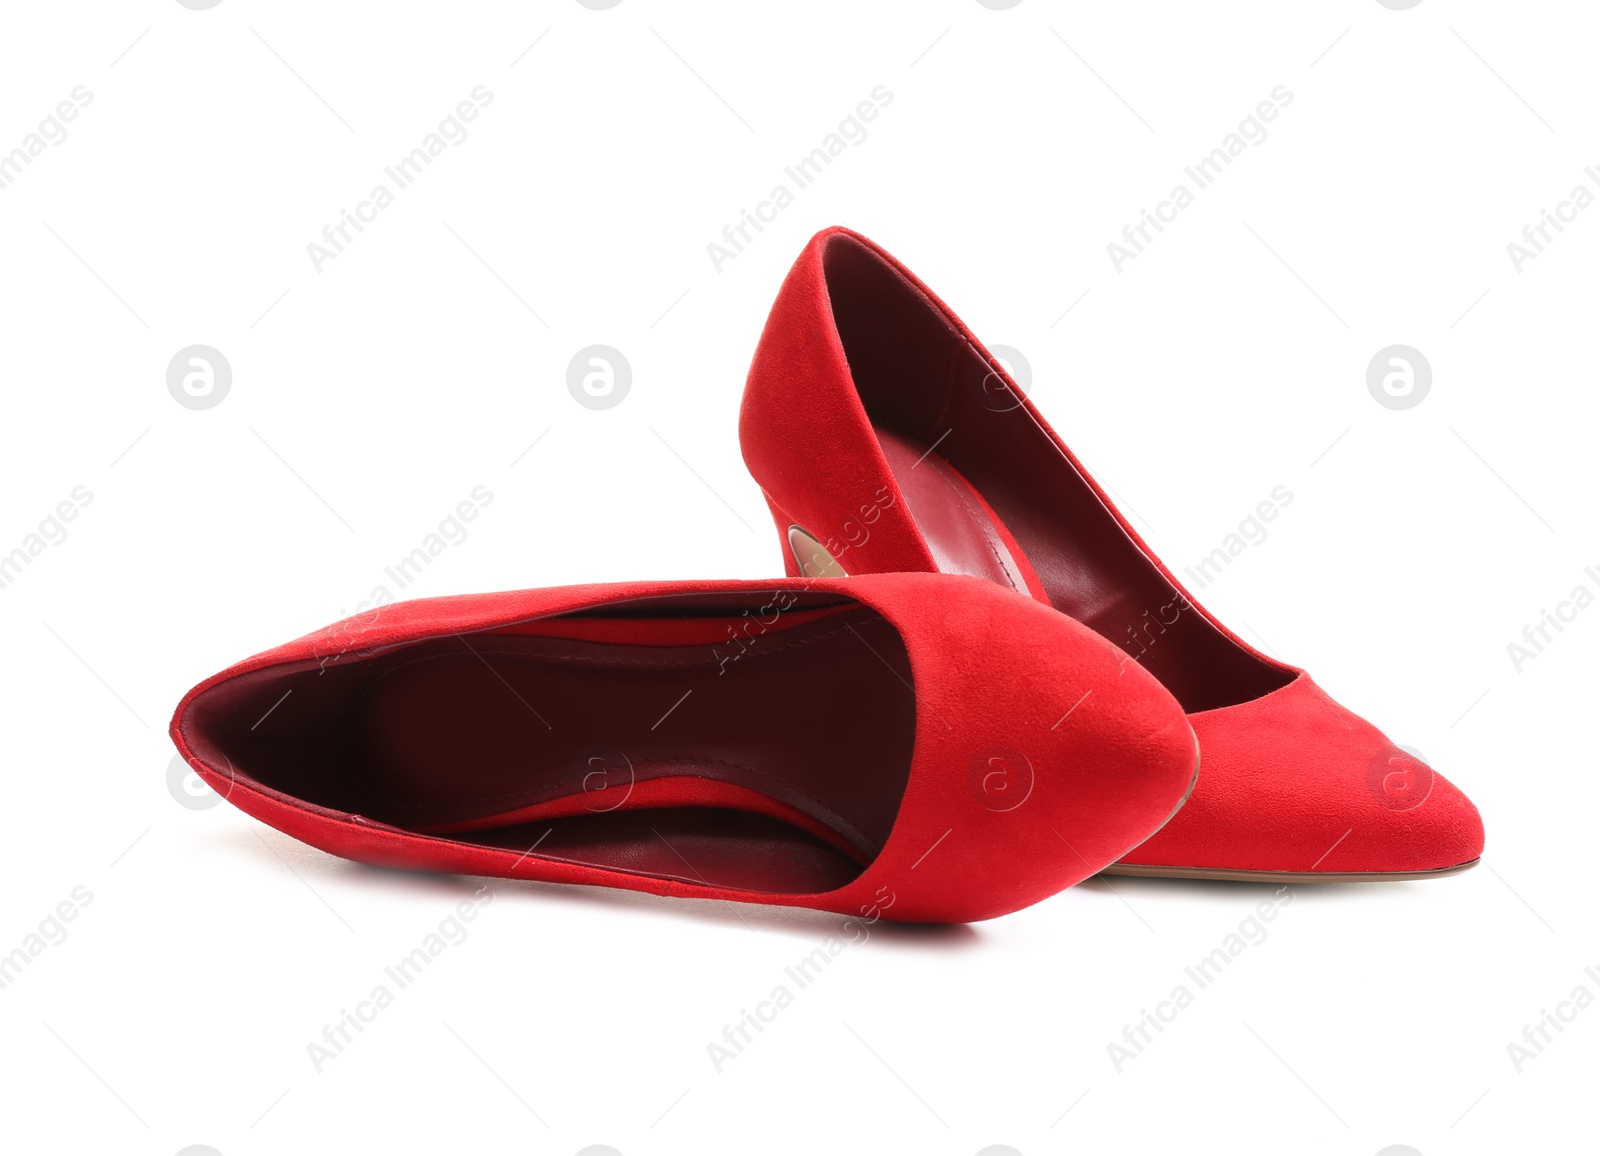 Photo of Stylish high heel shoes on white background